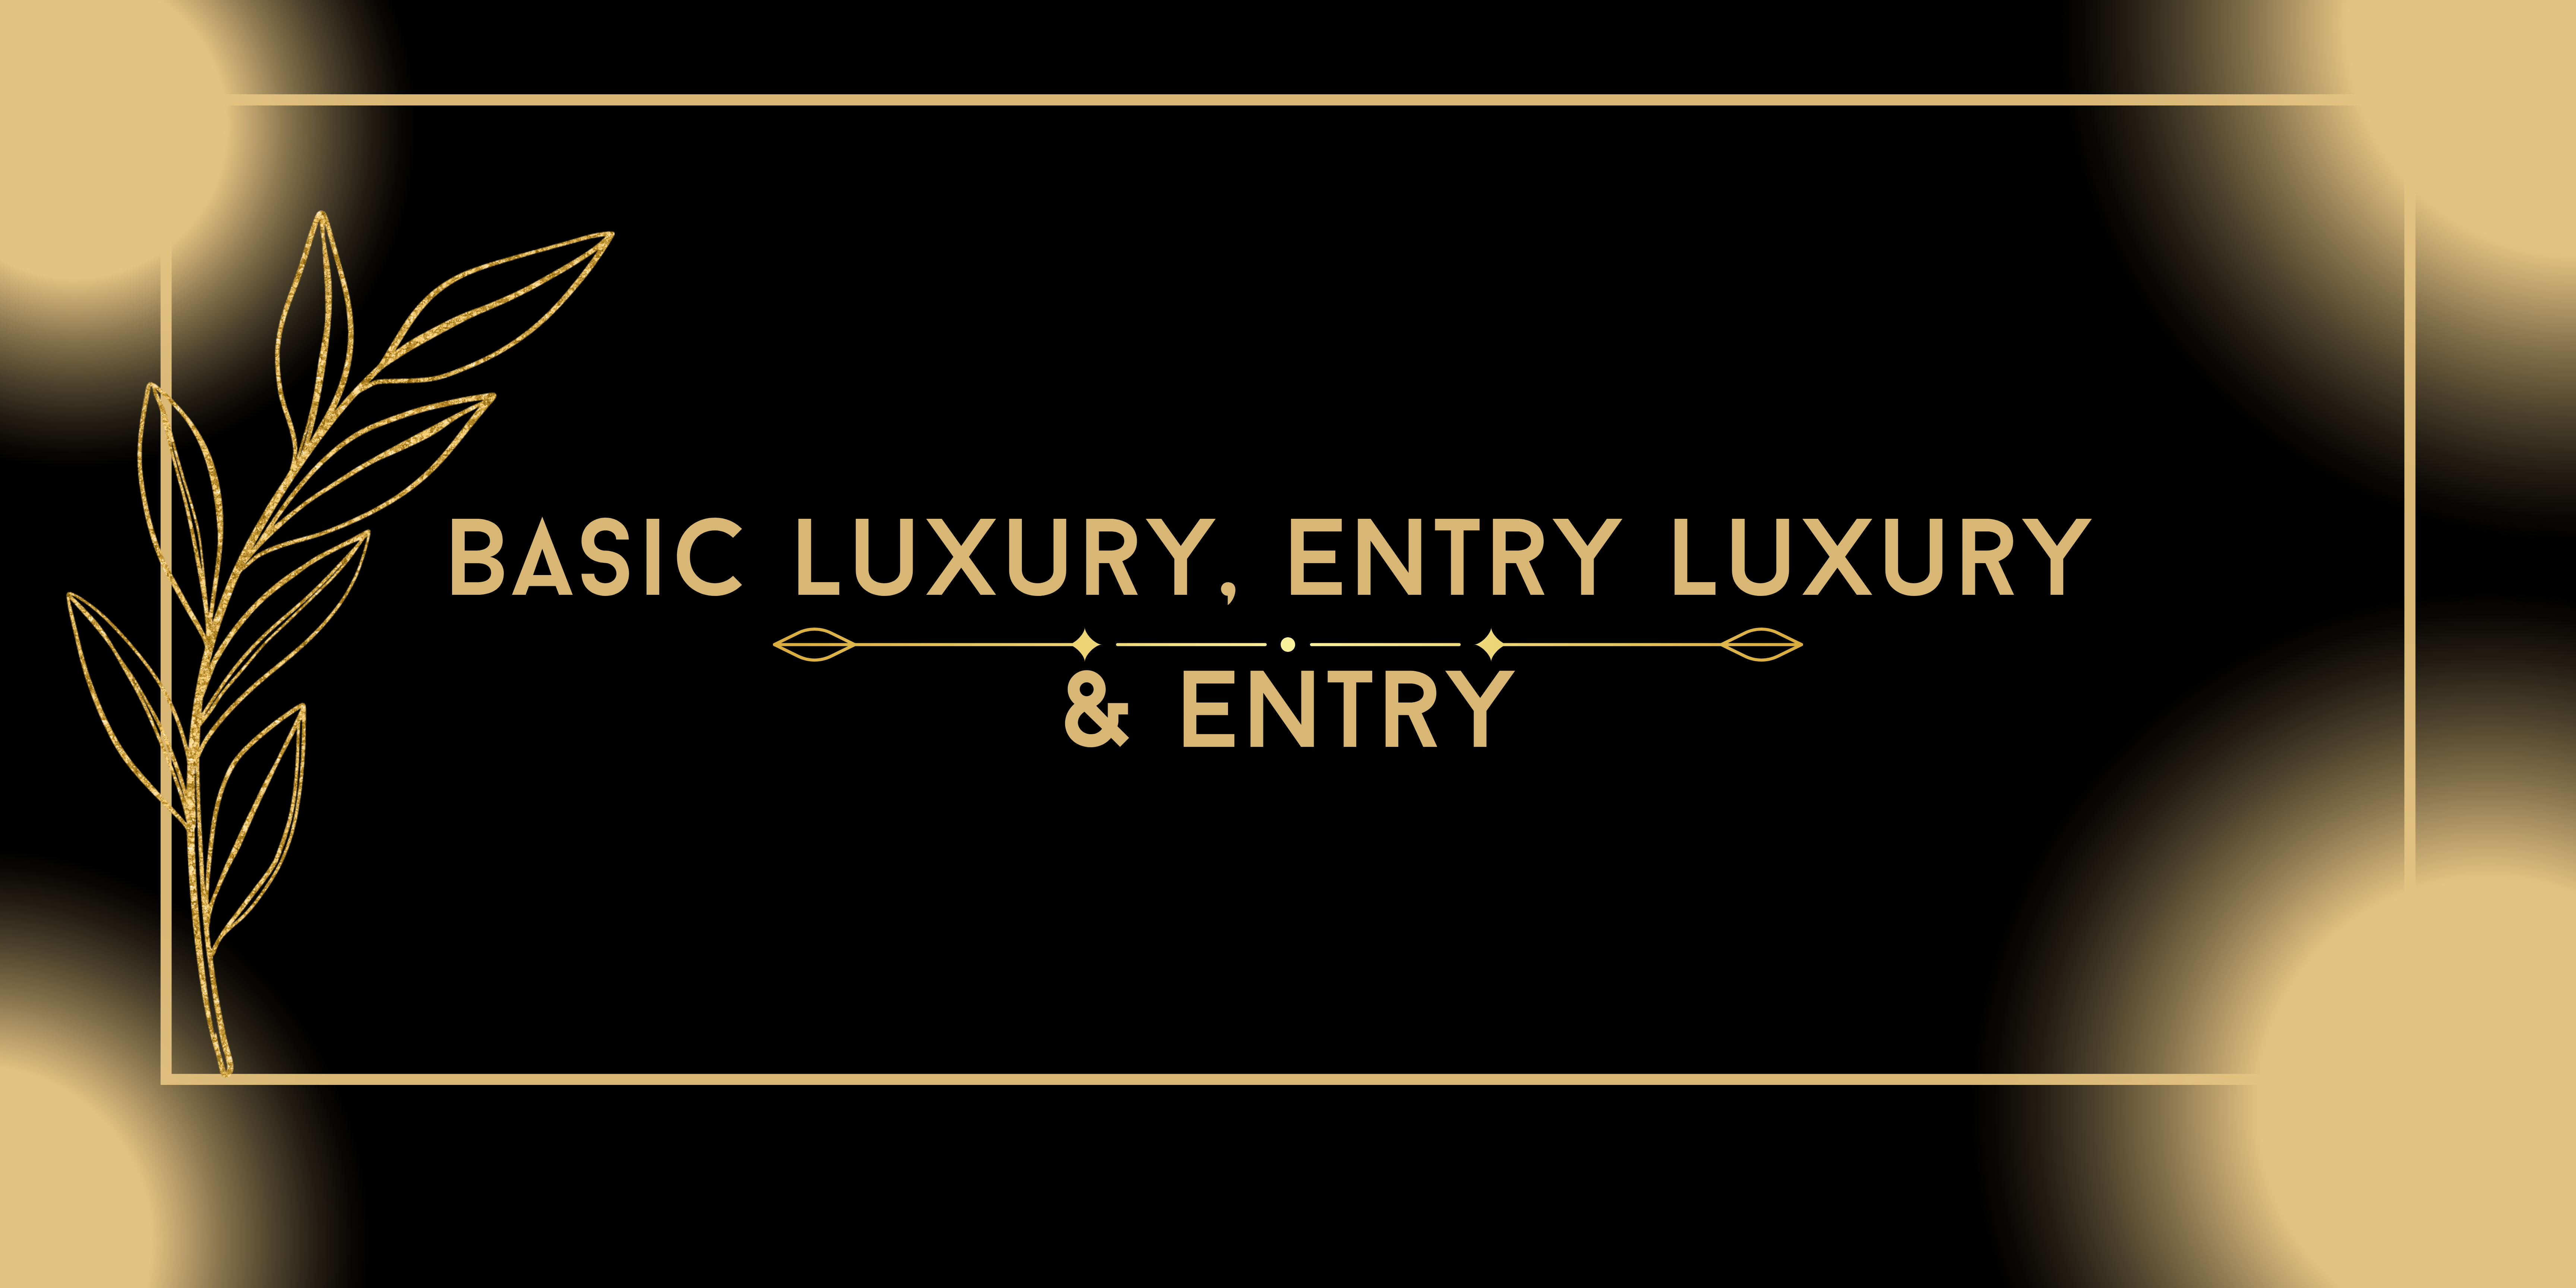 Basic Luxury, Entry Luxury and Entry - PART IV